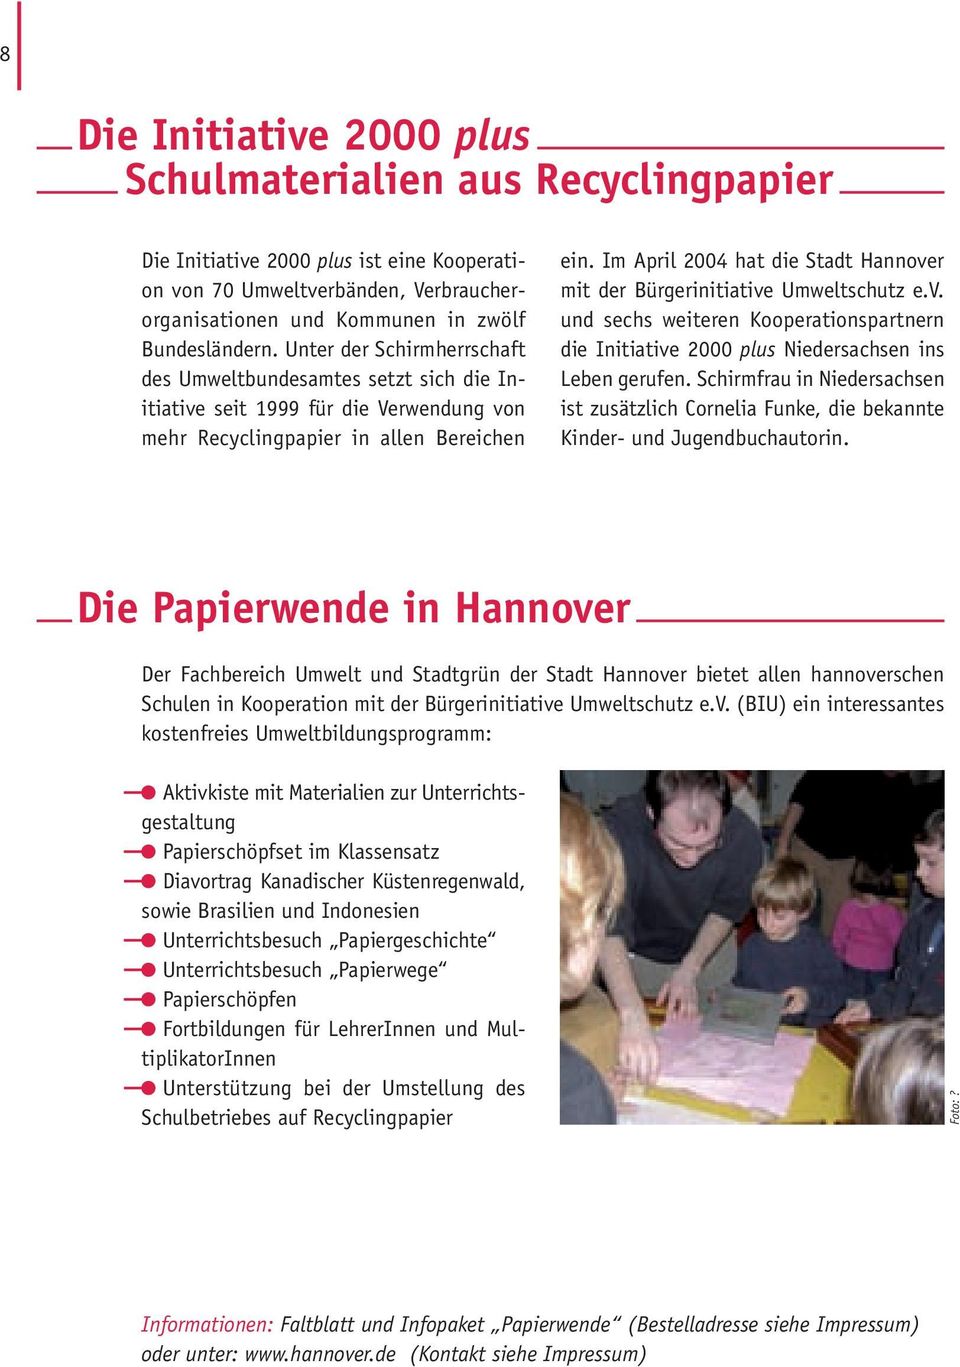 Im April 2004 hat die Stadt Hannover mit der Bürgerinitiative Umweltschutz e.v. und sechs weiteren Kooperationspartnern die Initiative 2000 plus Niedersachsen ins Leben gerufen.